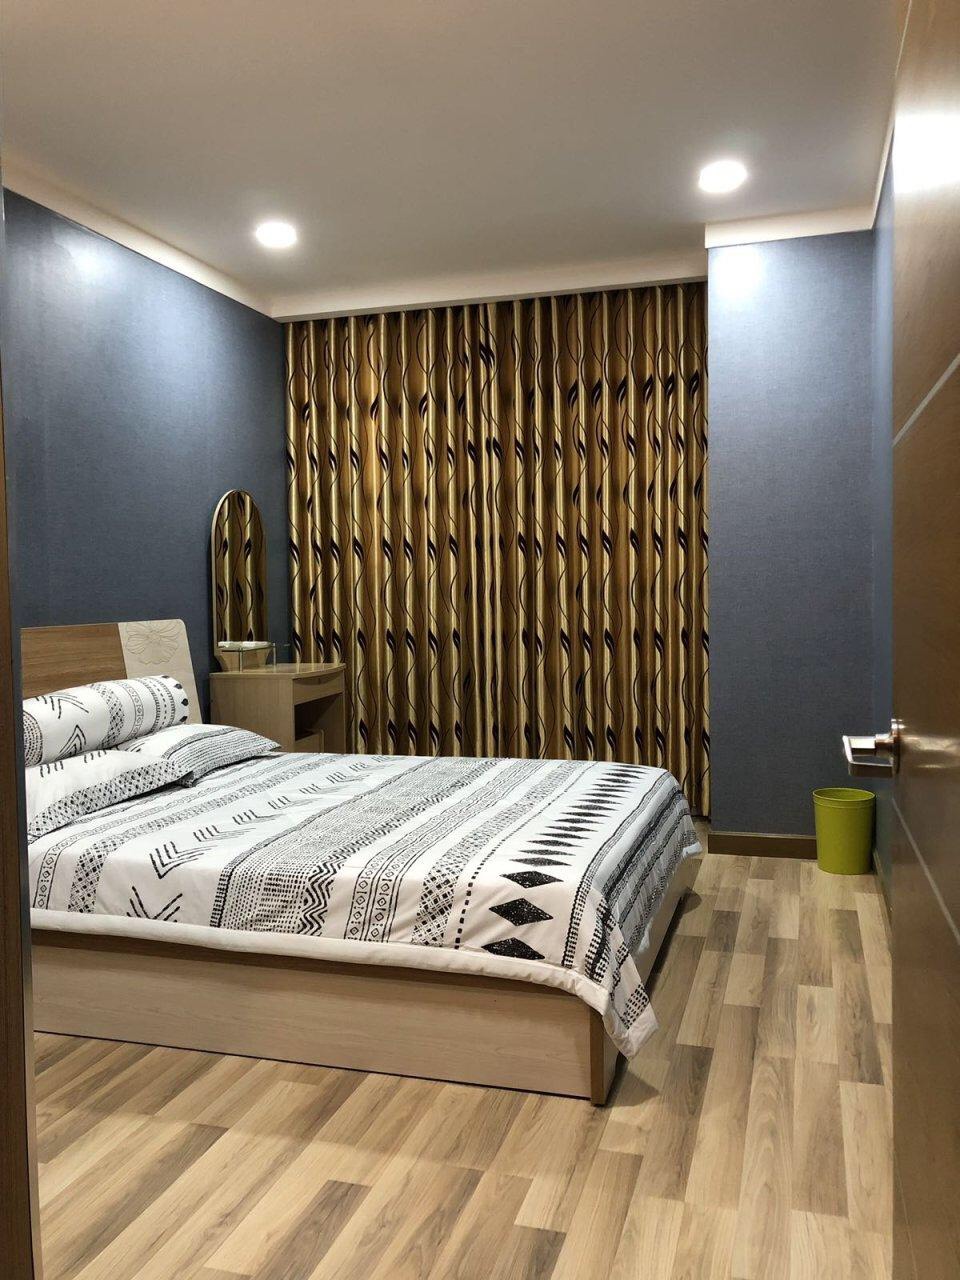 Căn hộ 1 Phòng ngủ lớn tại Sài Gòn Airport cho thuê gấp Giá #12Tr